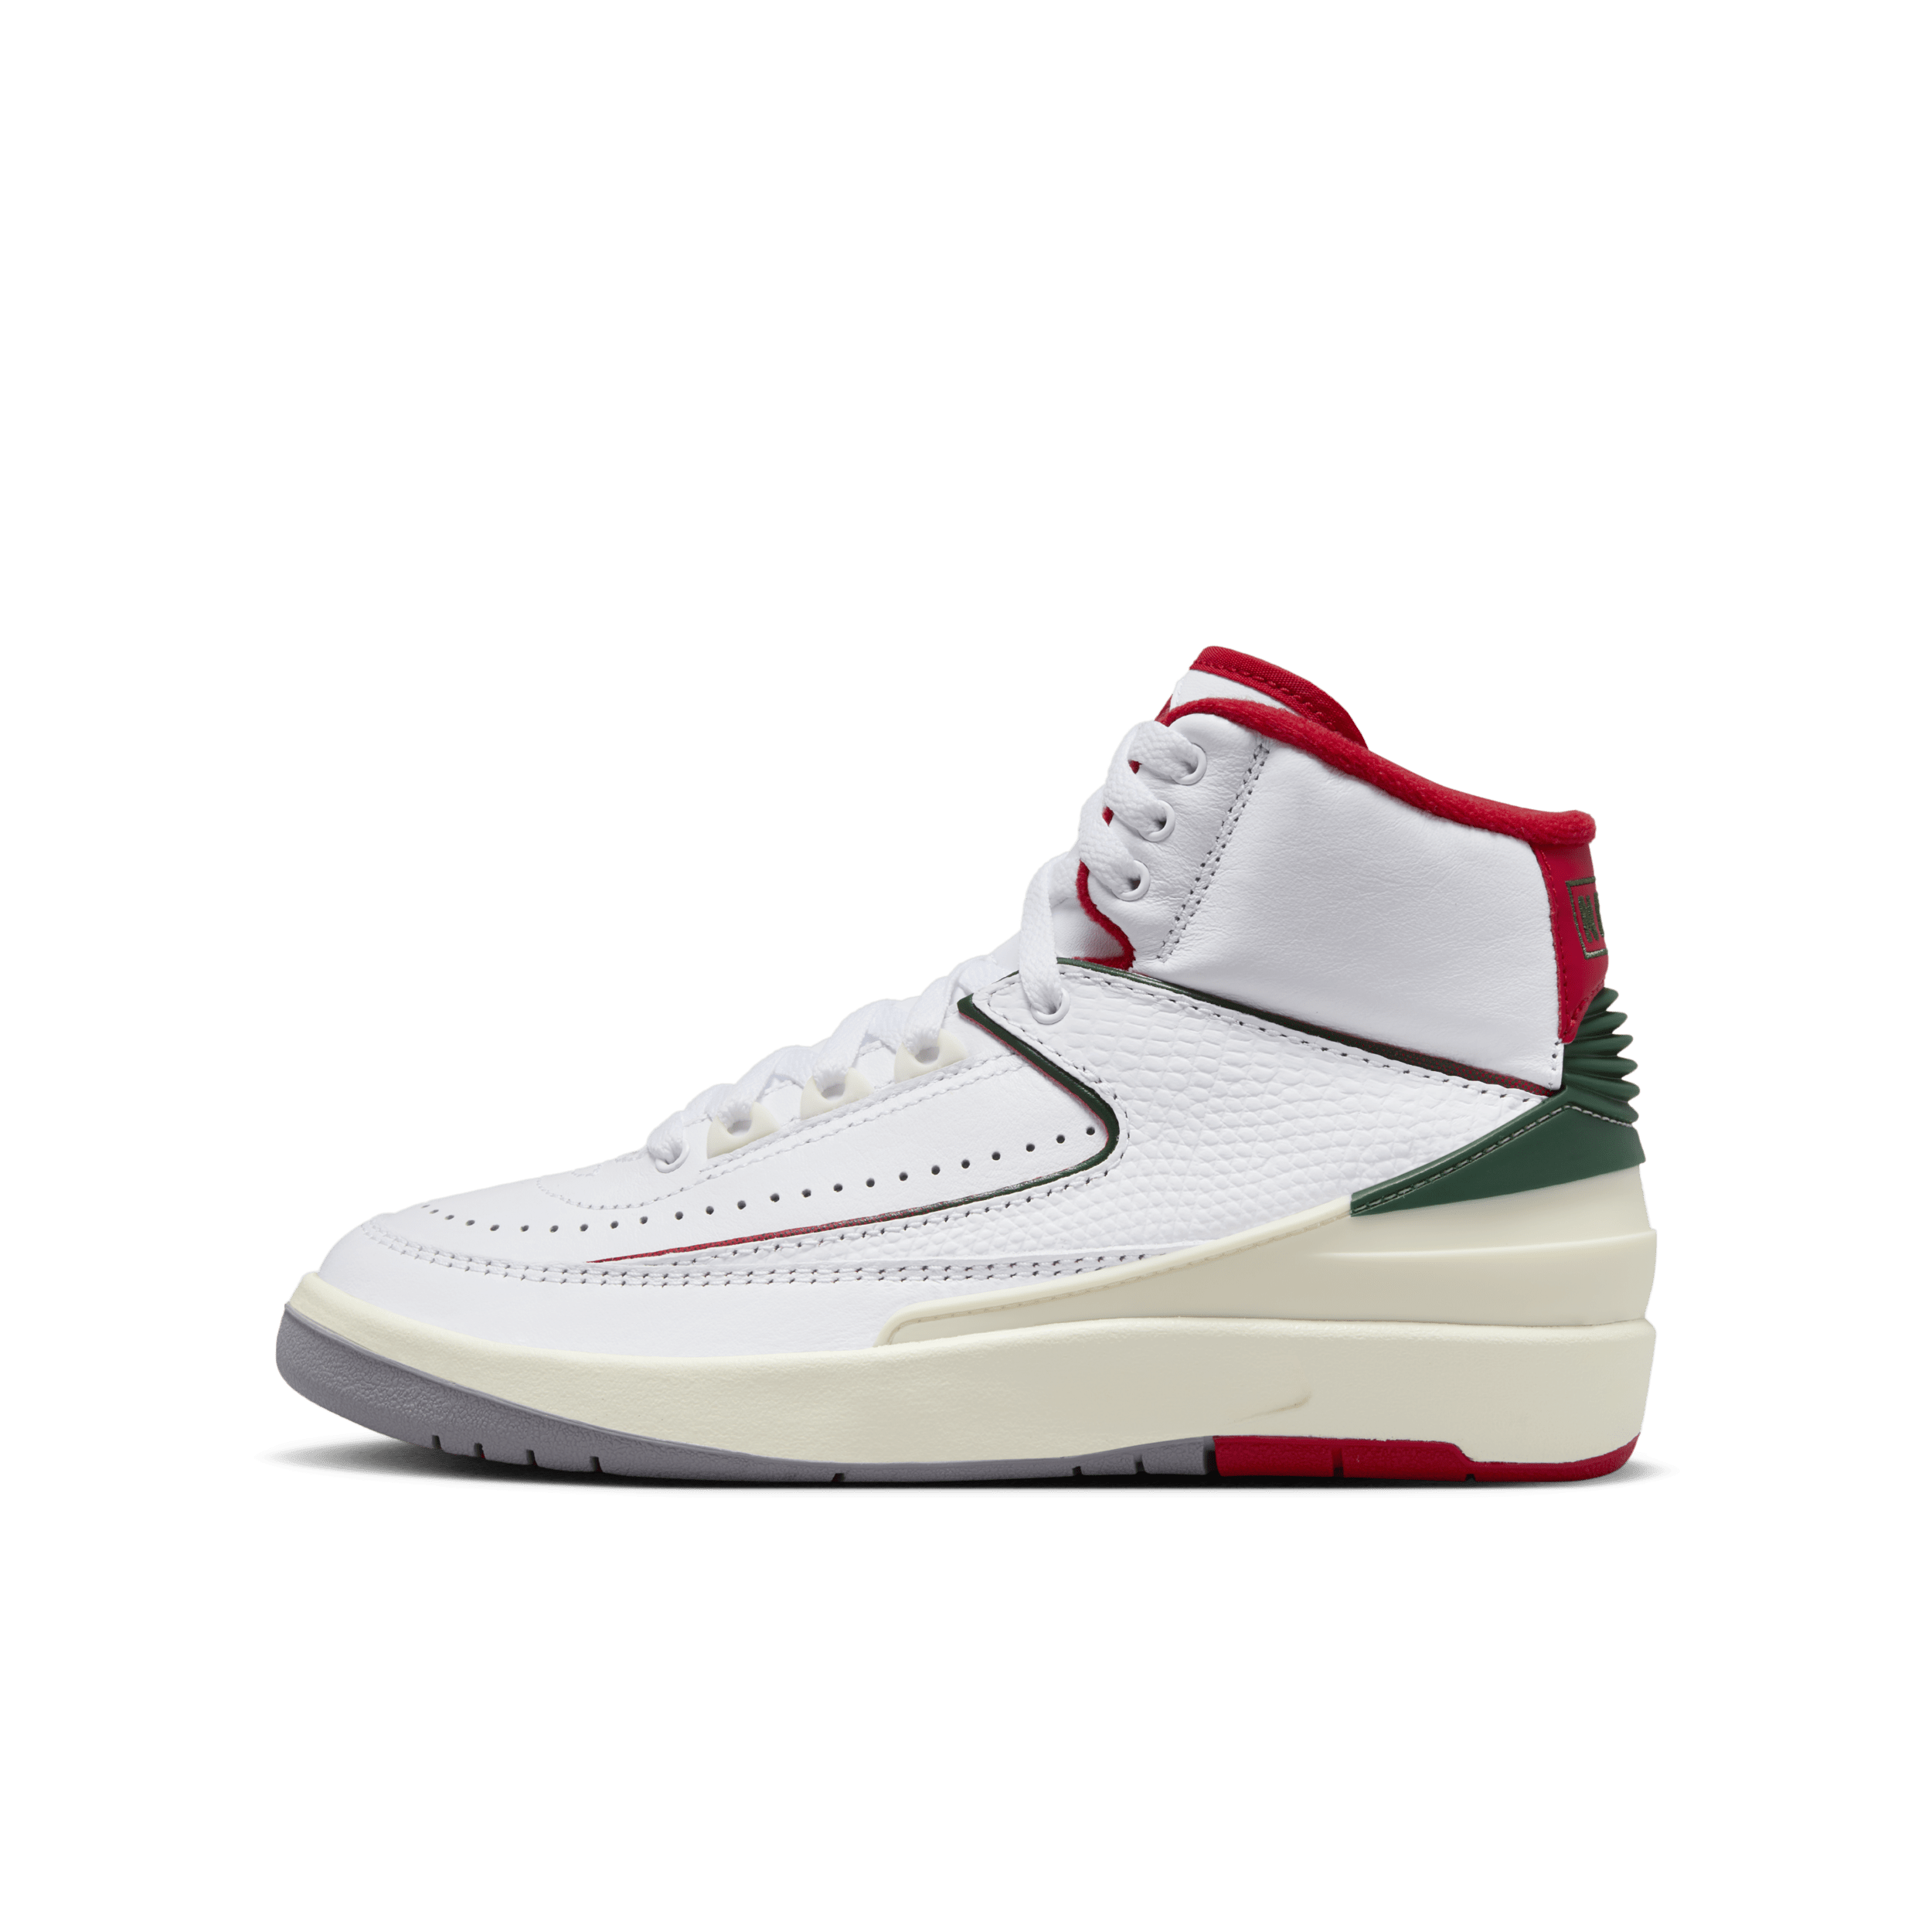 Air Jordan 2 Retro Zapatillas - Niño/a - Blanco